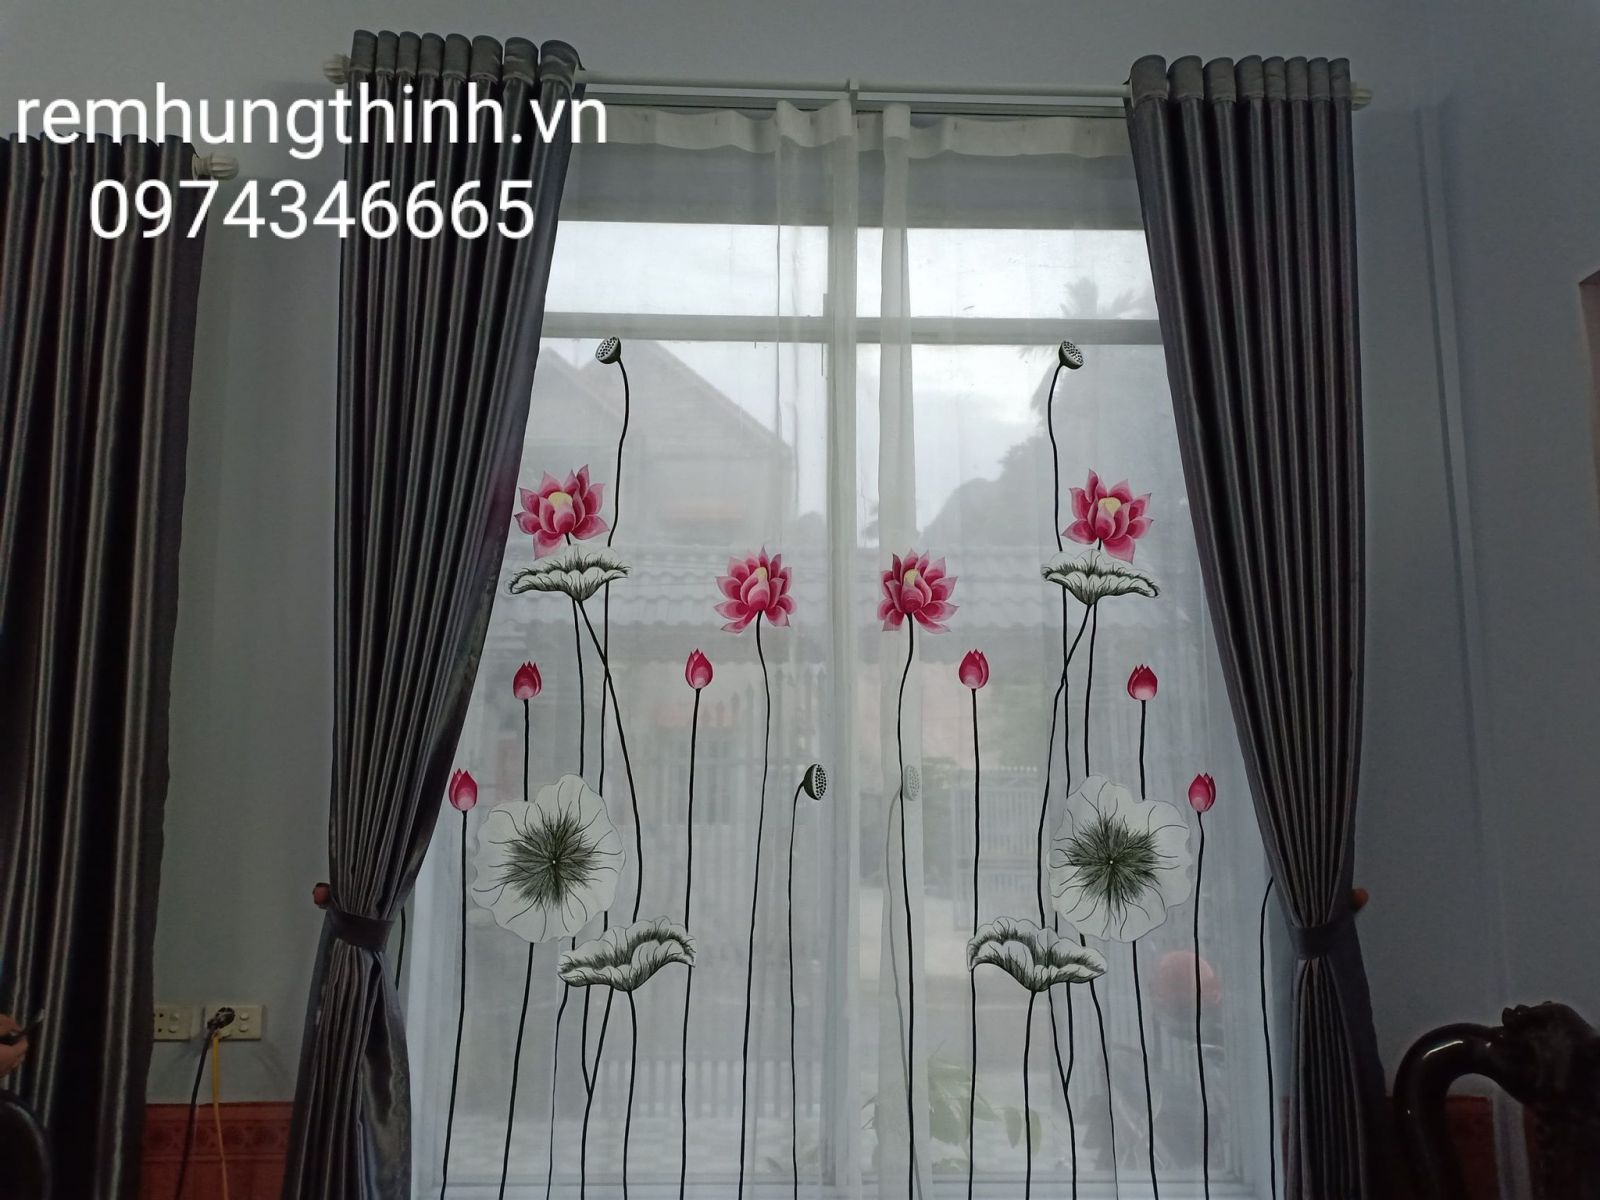 Địa chỉ cung cấp rèm vải voan thêu tay uy tín tại quận Hoàn Kiếm Hà Nội